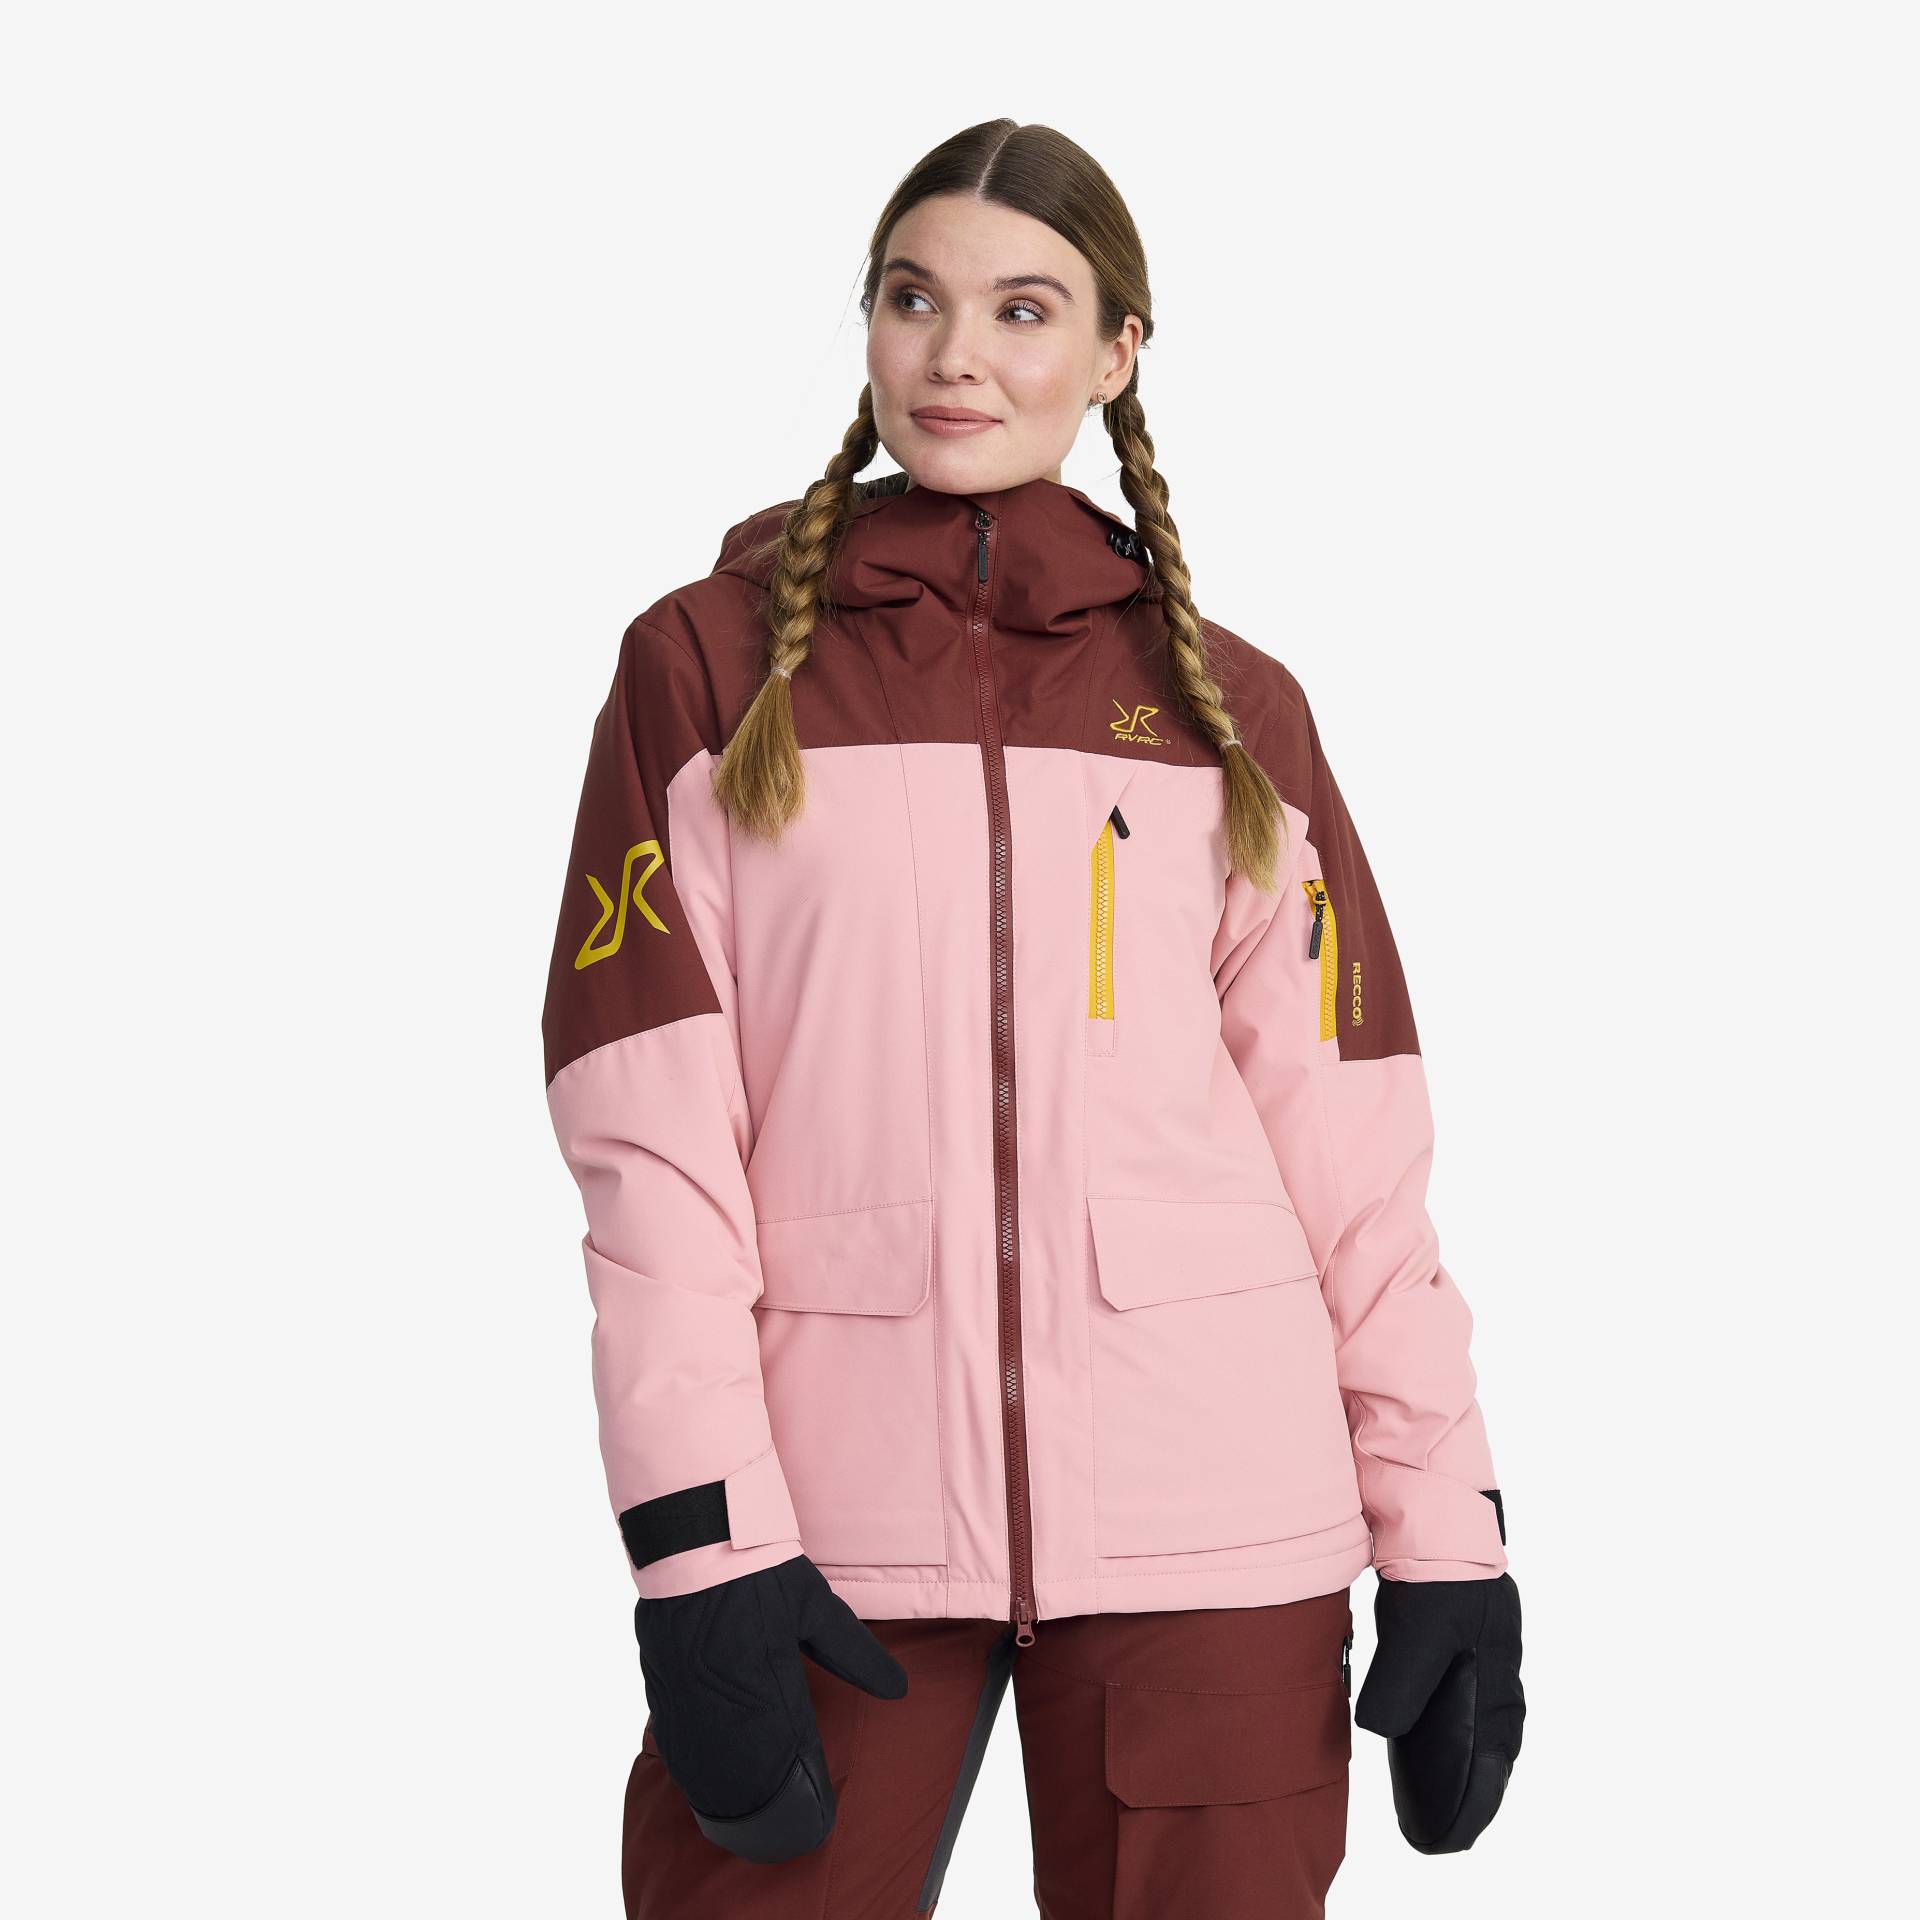 Halo 2L Insulated Ski Jacket Damen Blush, Größe:XL - Skijacken von RevolutionRace